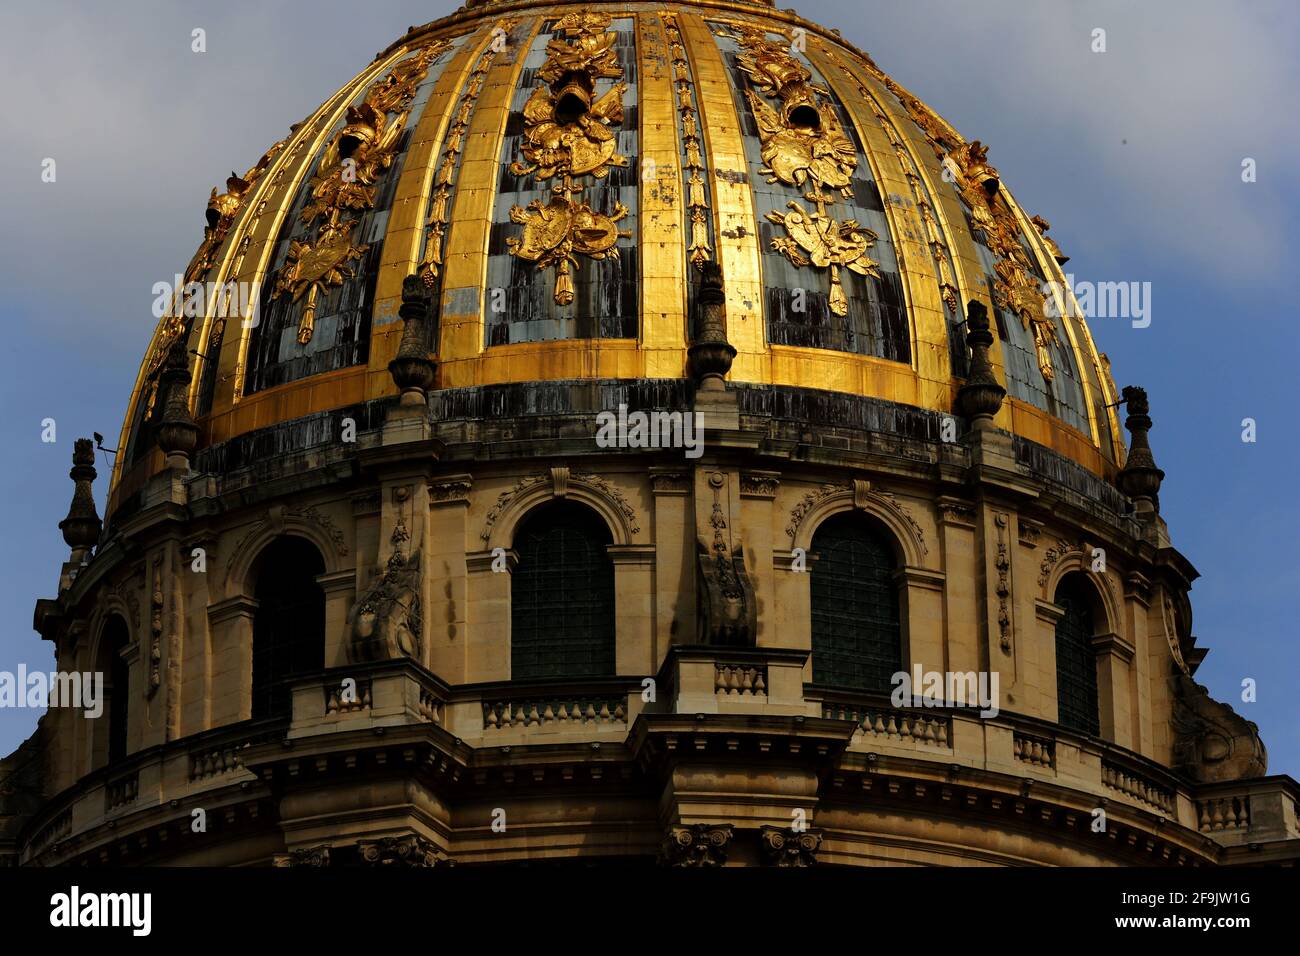 die vergoldete Kuppel des Invalidendoms in Paris strahlt in der Sonne Stock Photo